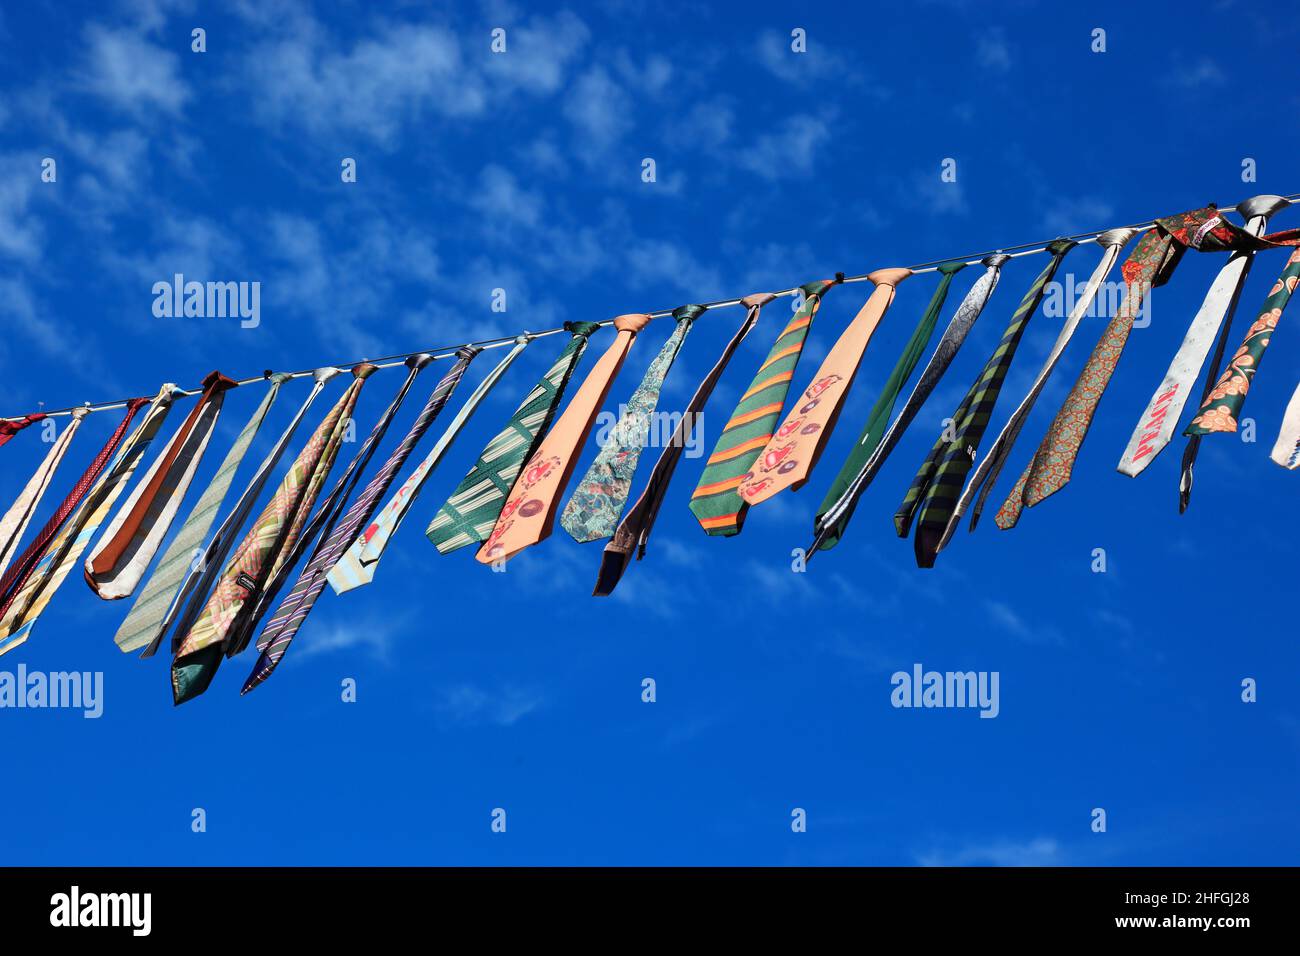 Viele bunte Krawatten hängen an einer Wäscheleine, blauer Himmel / molti legami colorati appesi su un clothesline, cielo blu Foto Stock